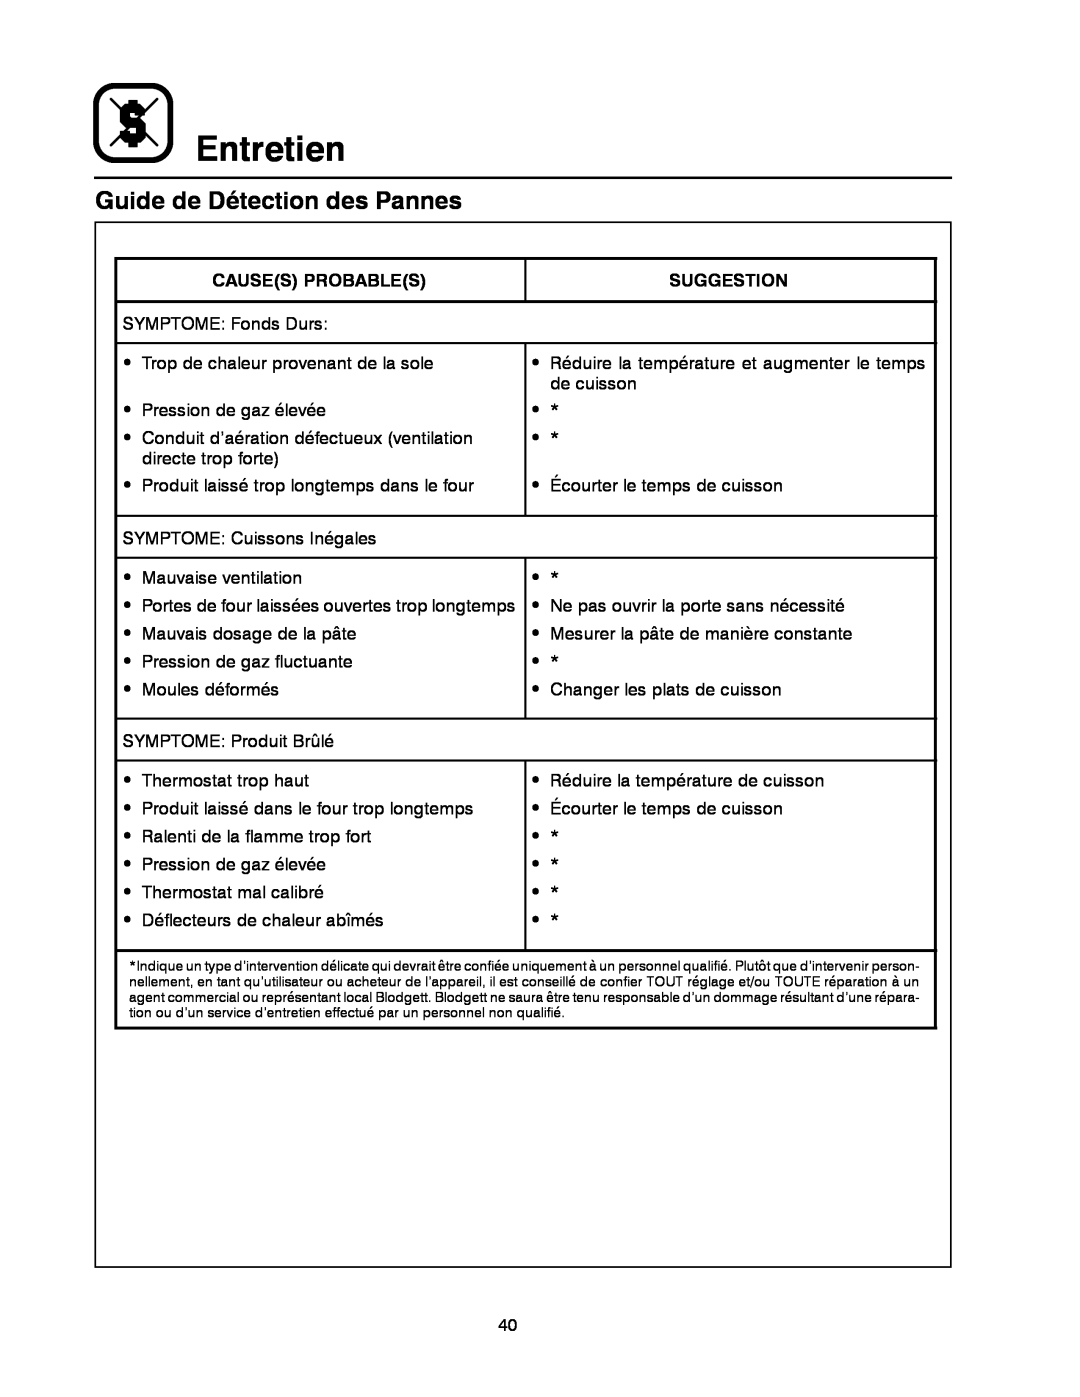 Blodgett 900 SERIES manual Guide de Détection des Pannes, Entretien, Causes Probables, Suggestion 